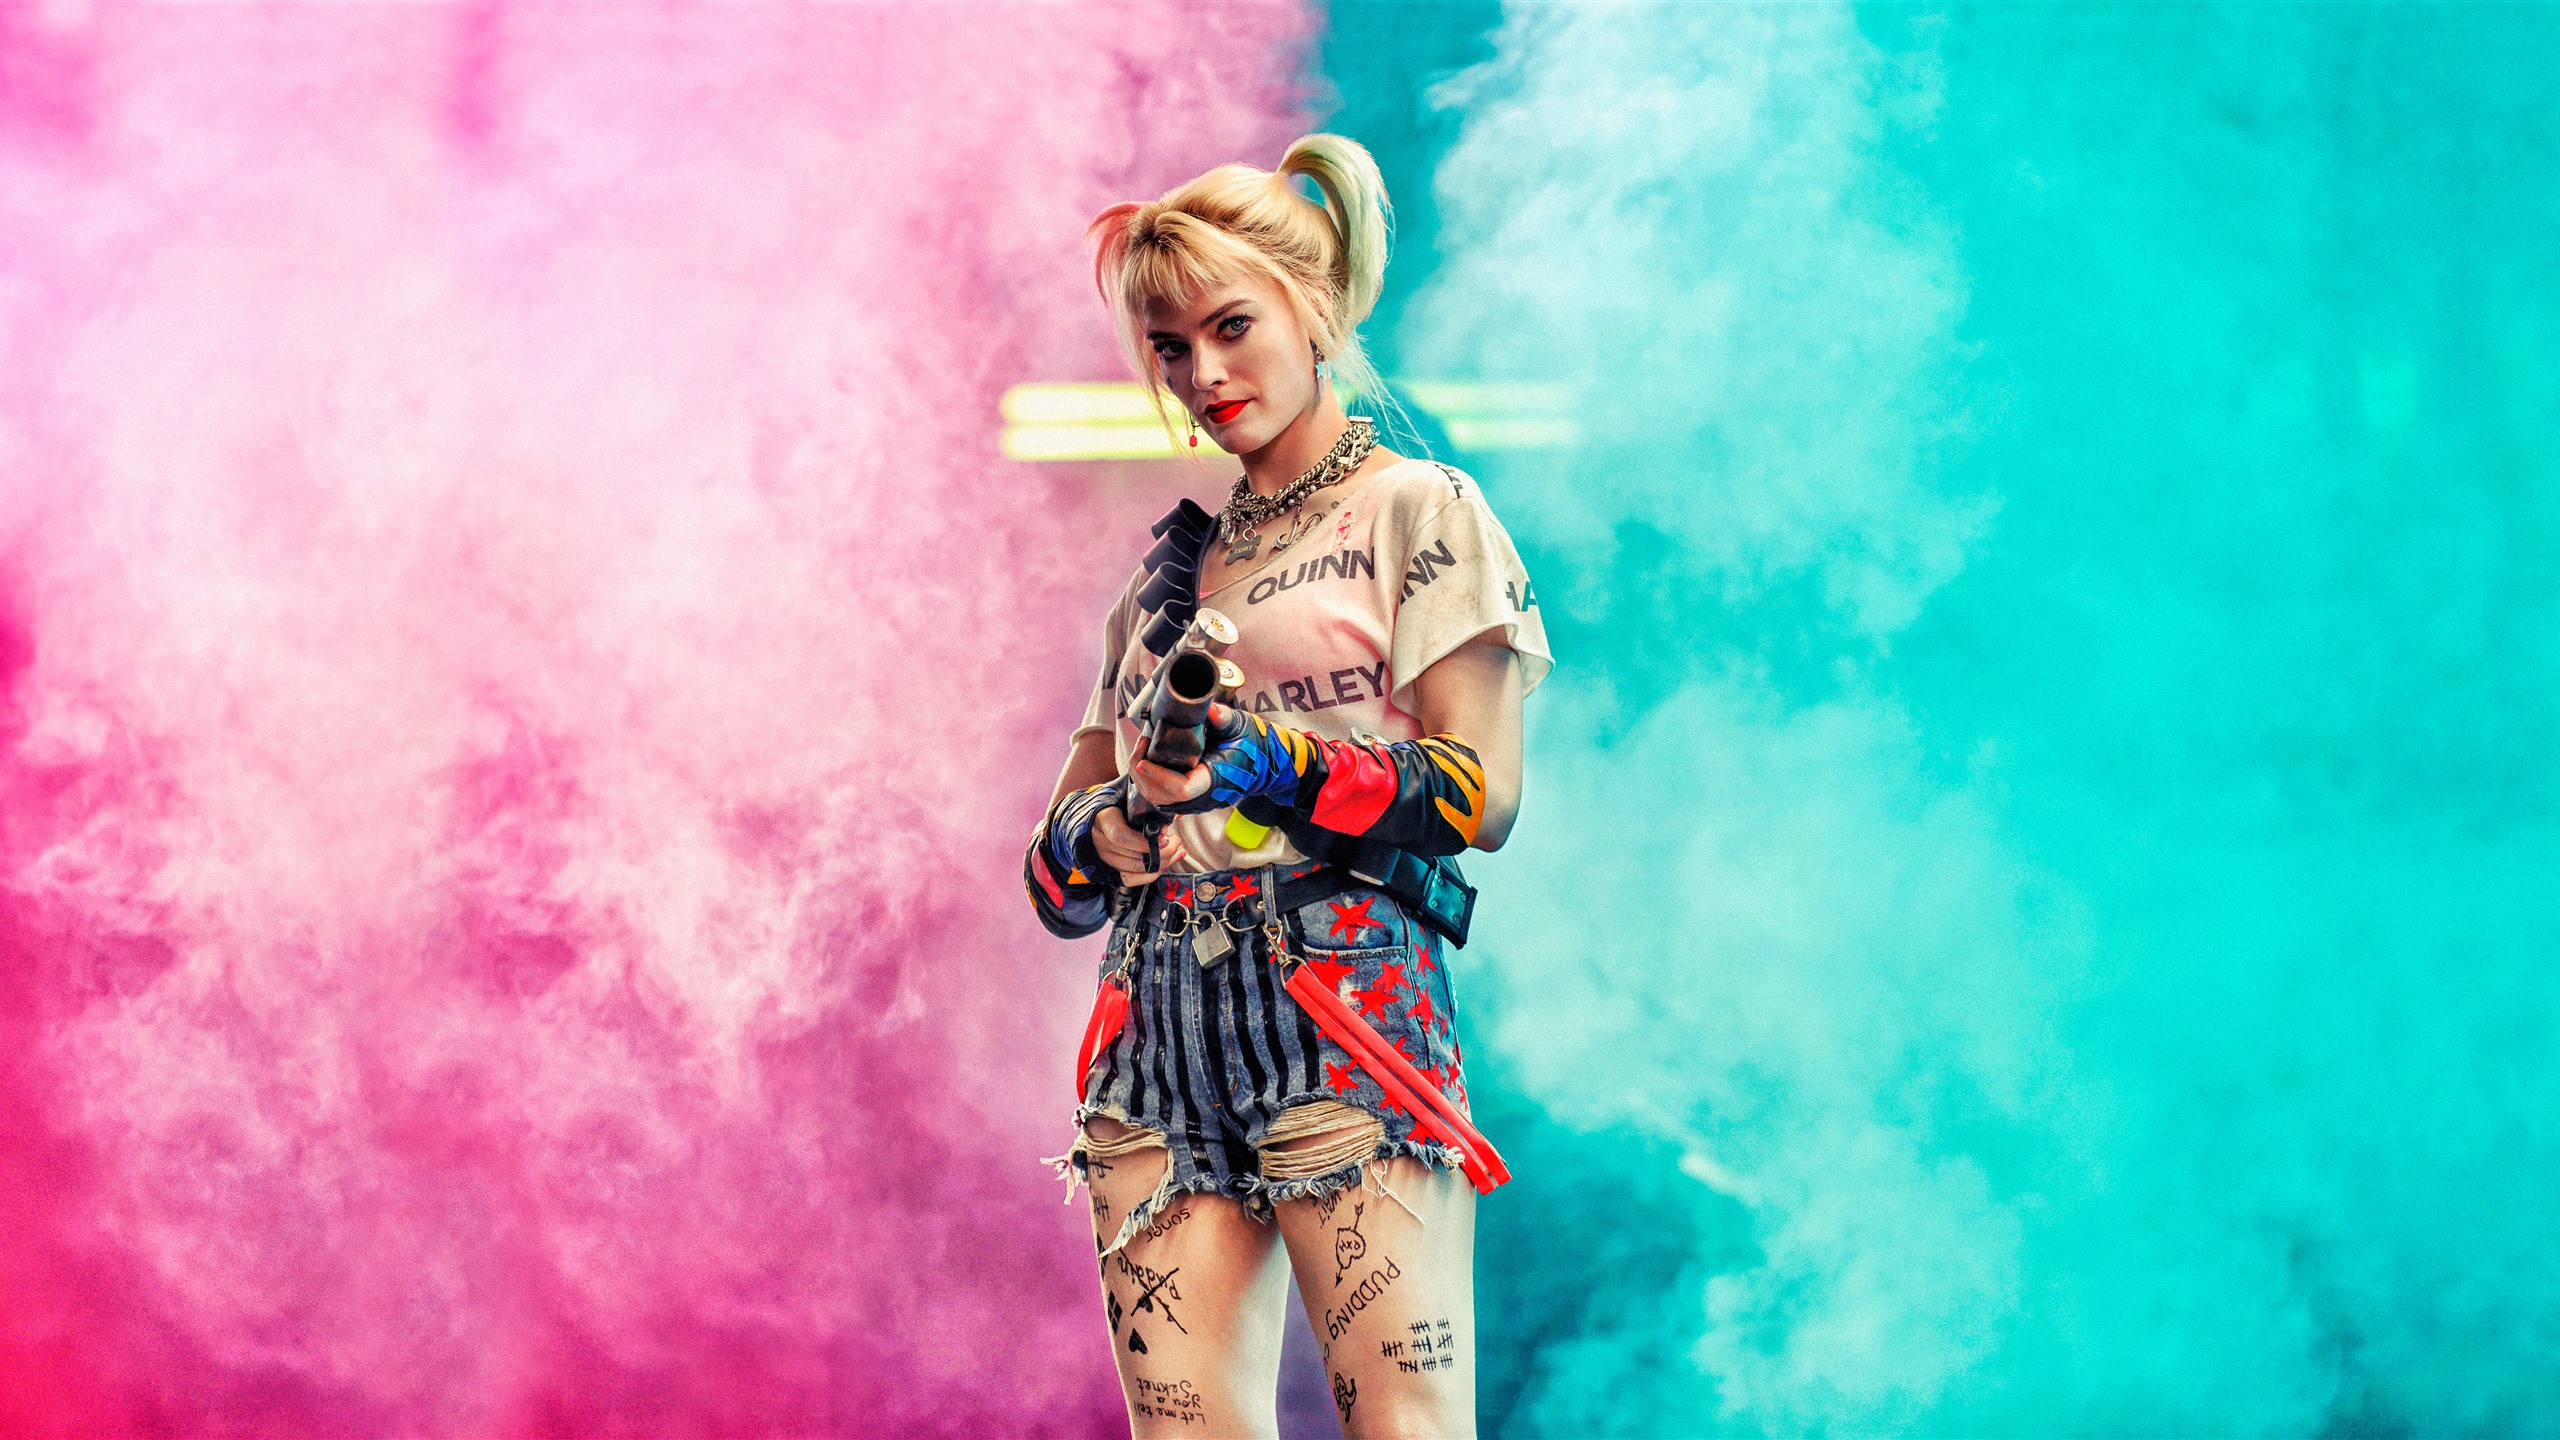 Margot Robbie Harley Quinn 2020 , HD Wallpaper & Backgrounds